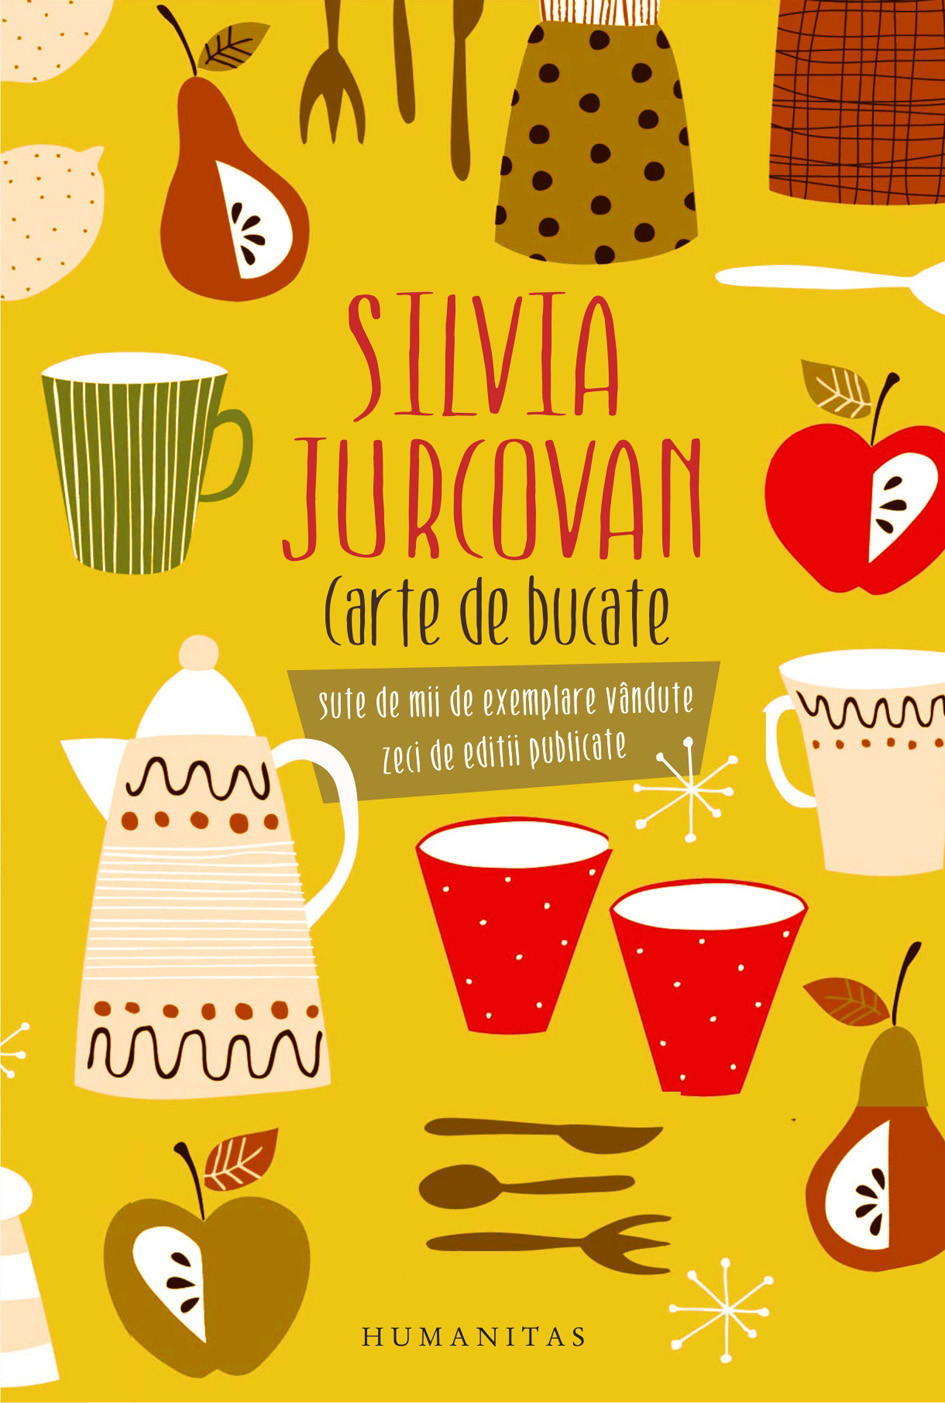 Carte de bucate | Silvia Jurcovan carturesti.ro poza noua